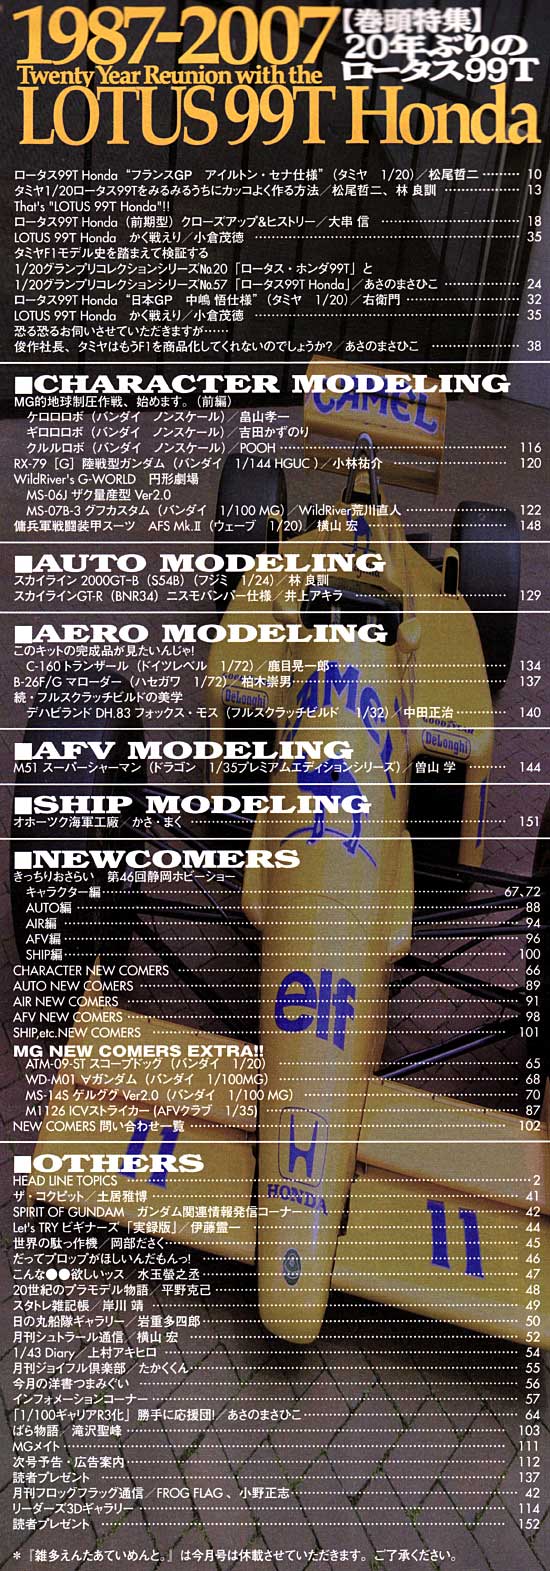 モデルグラフィックス 2007年8月号 雑誌 (大日本絵画 月刊 モデルグラフィックス No.273) 商品画像_1